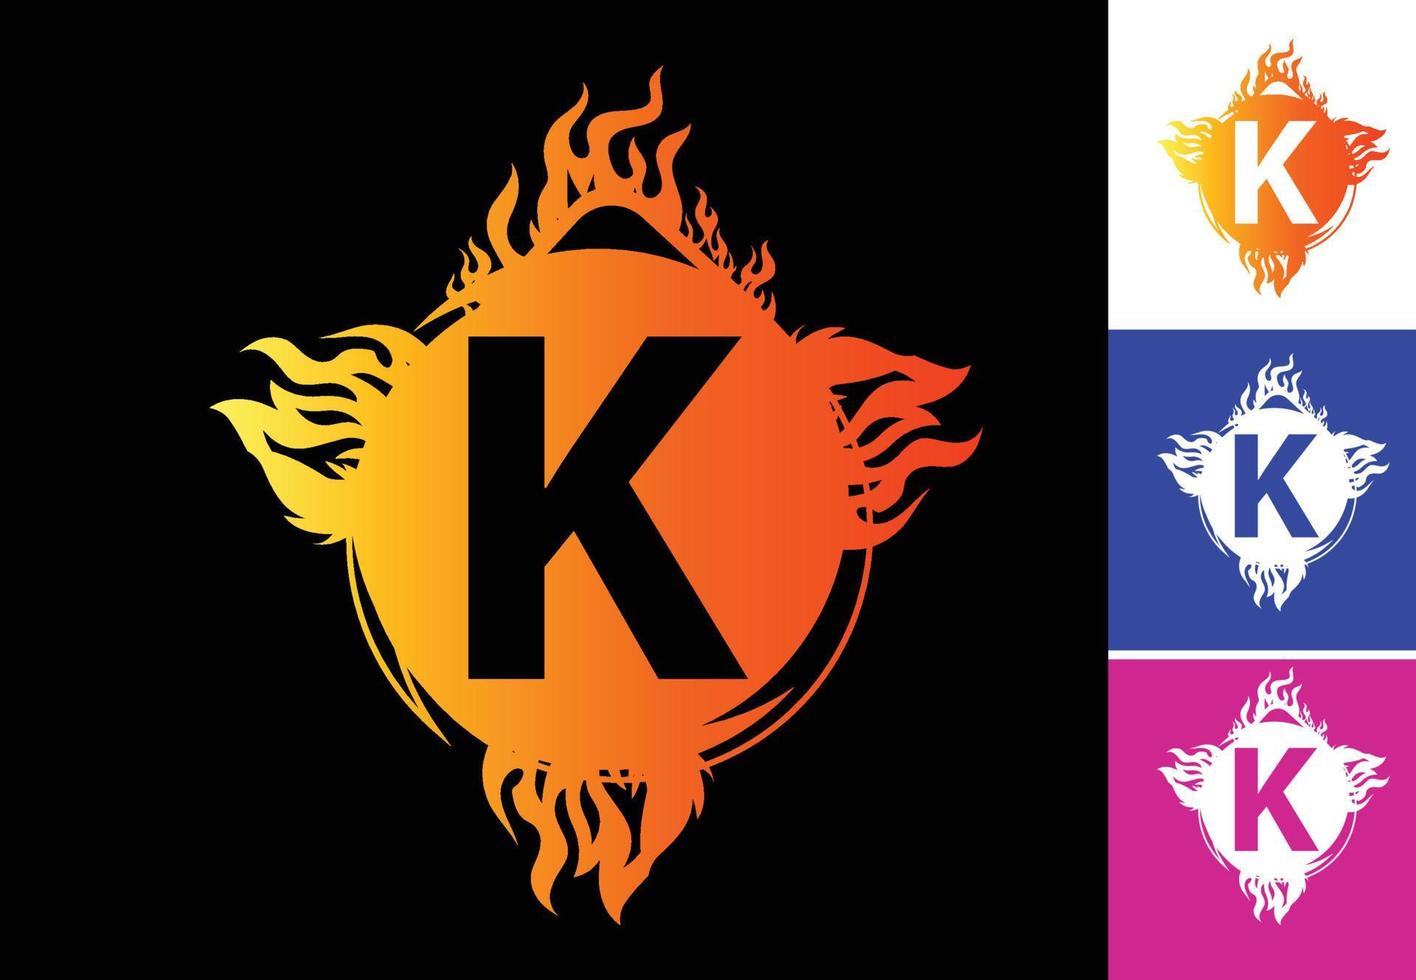 fuoco k lettera logo e modello di design dell'icona vettore